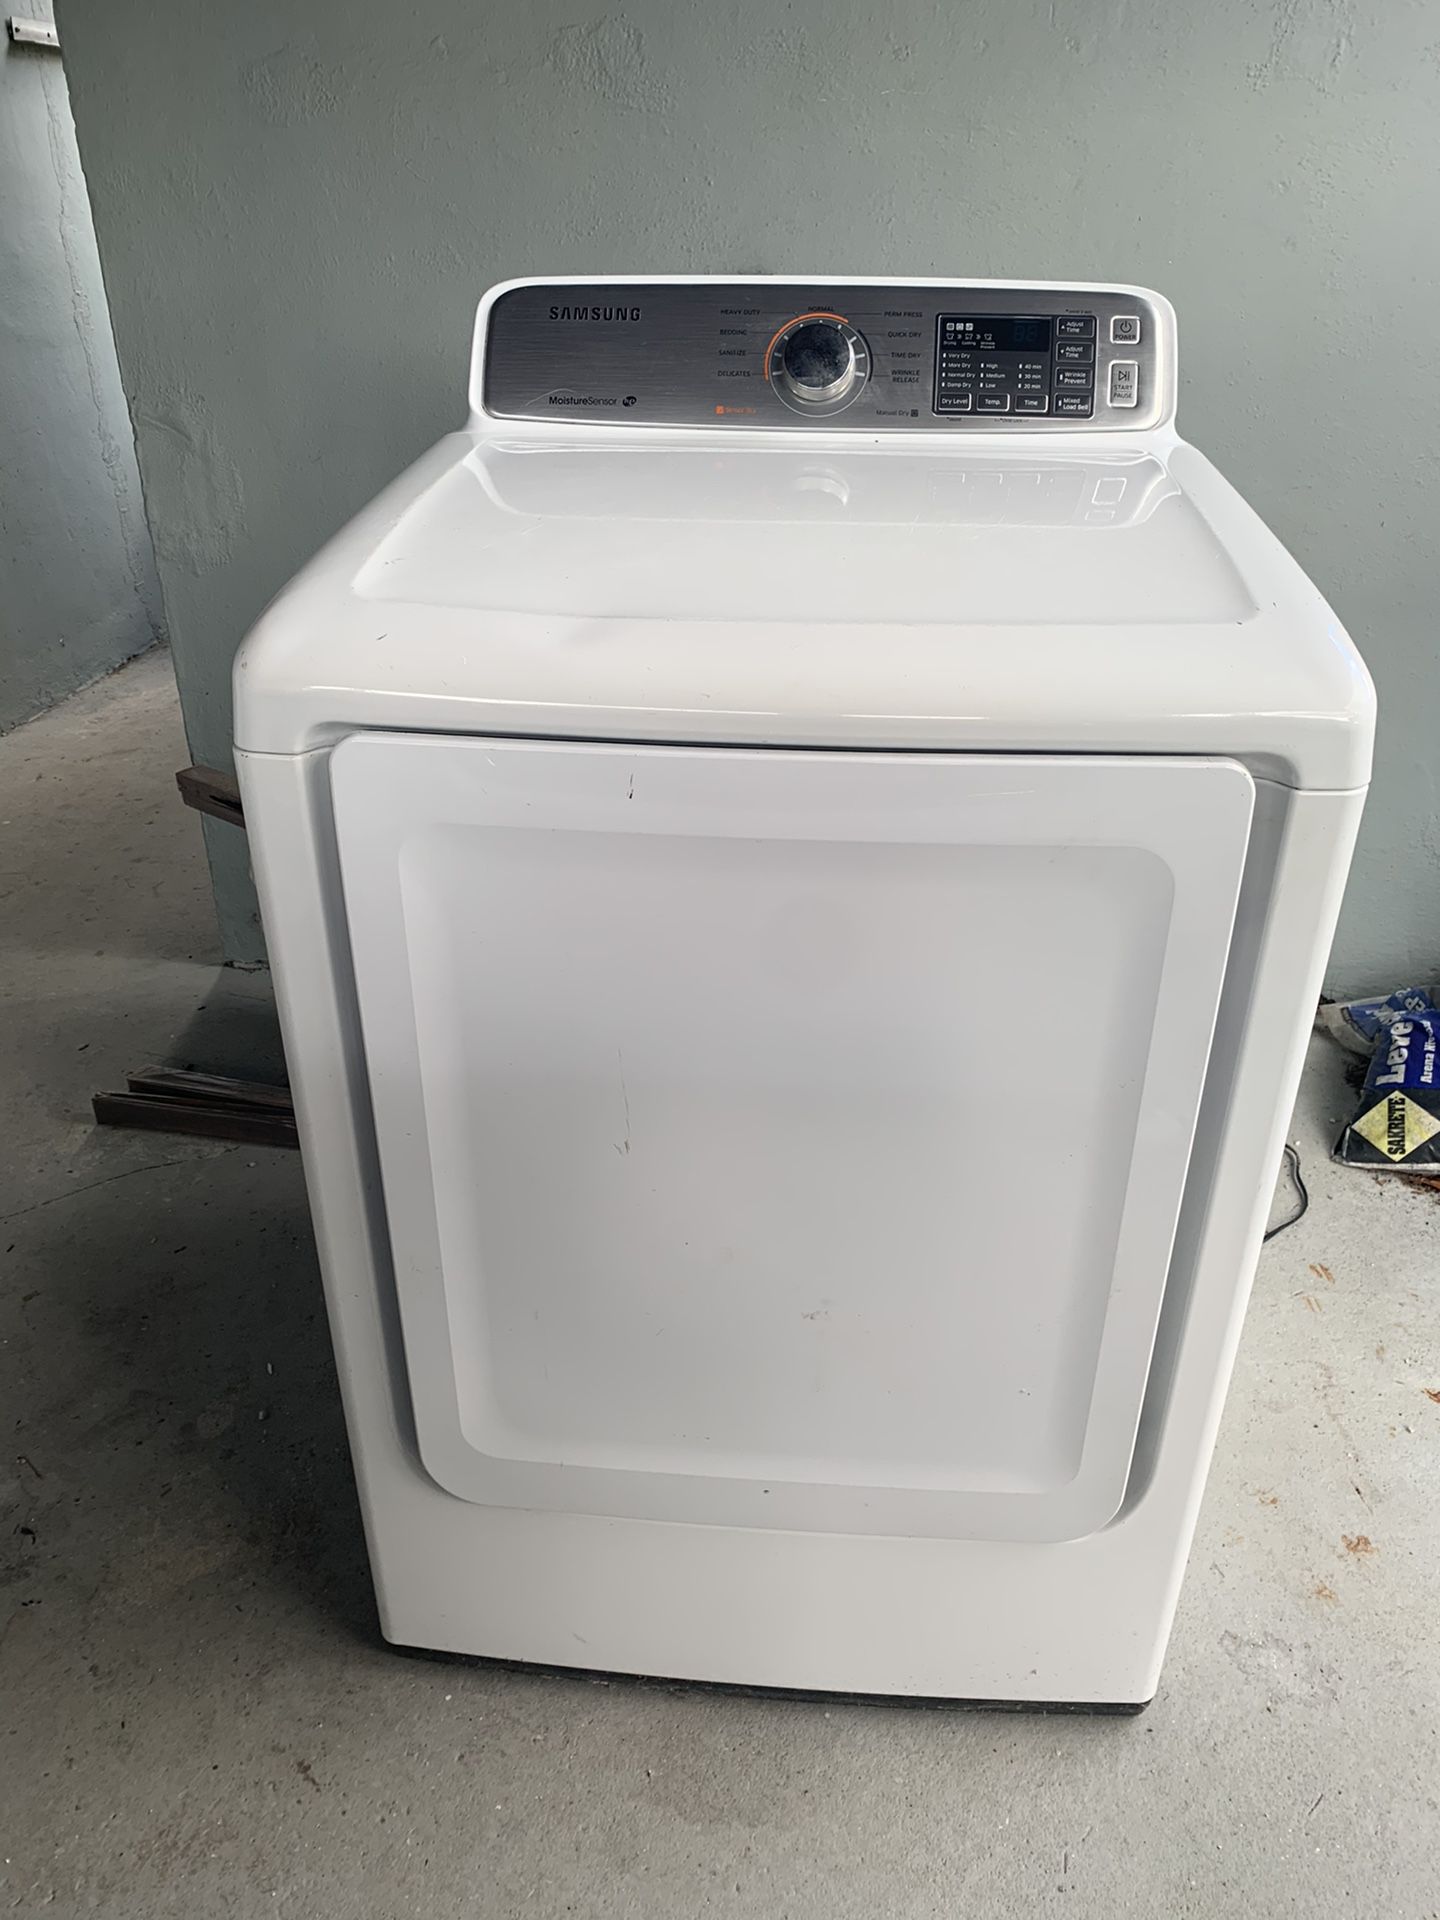 Whirlpool washer & Samsung dryer